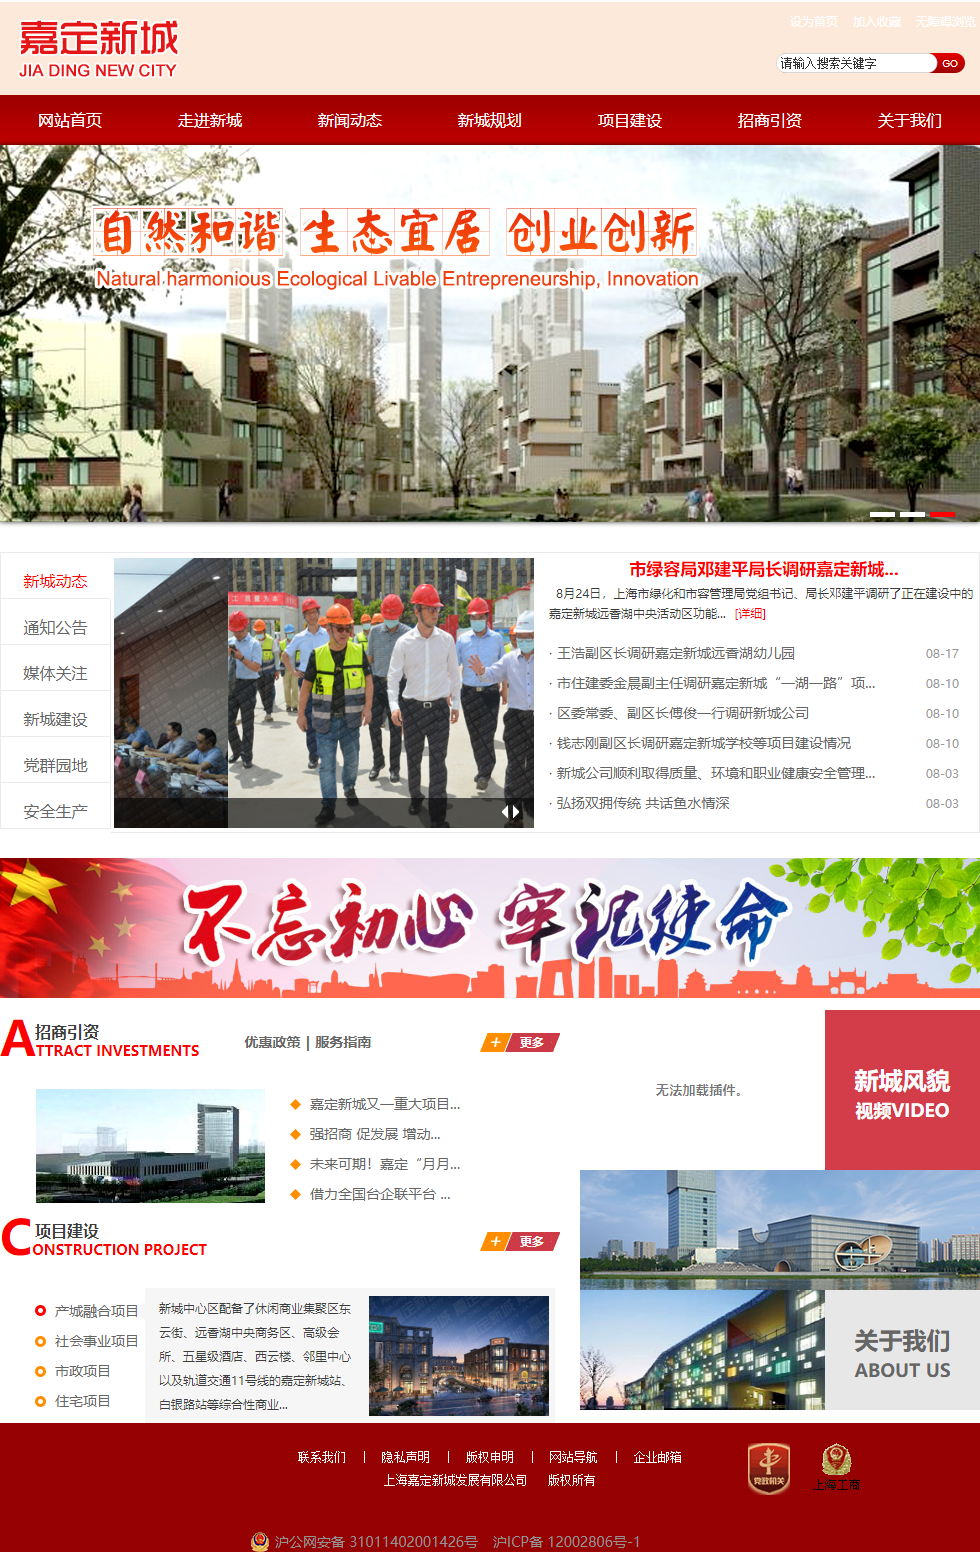 上海嘉定新城发展有限公司网站案例